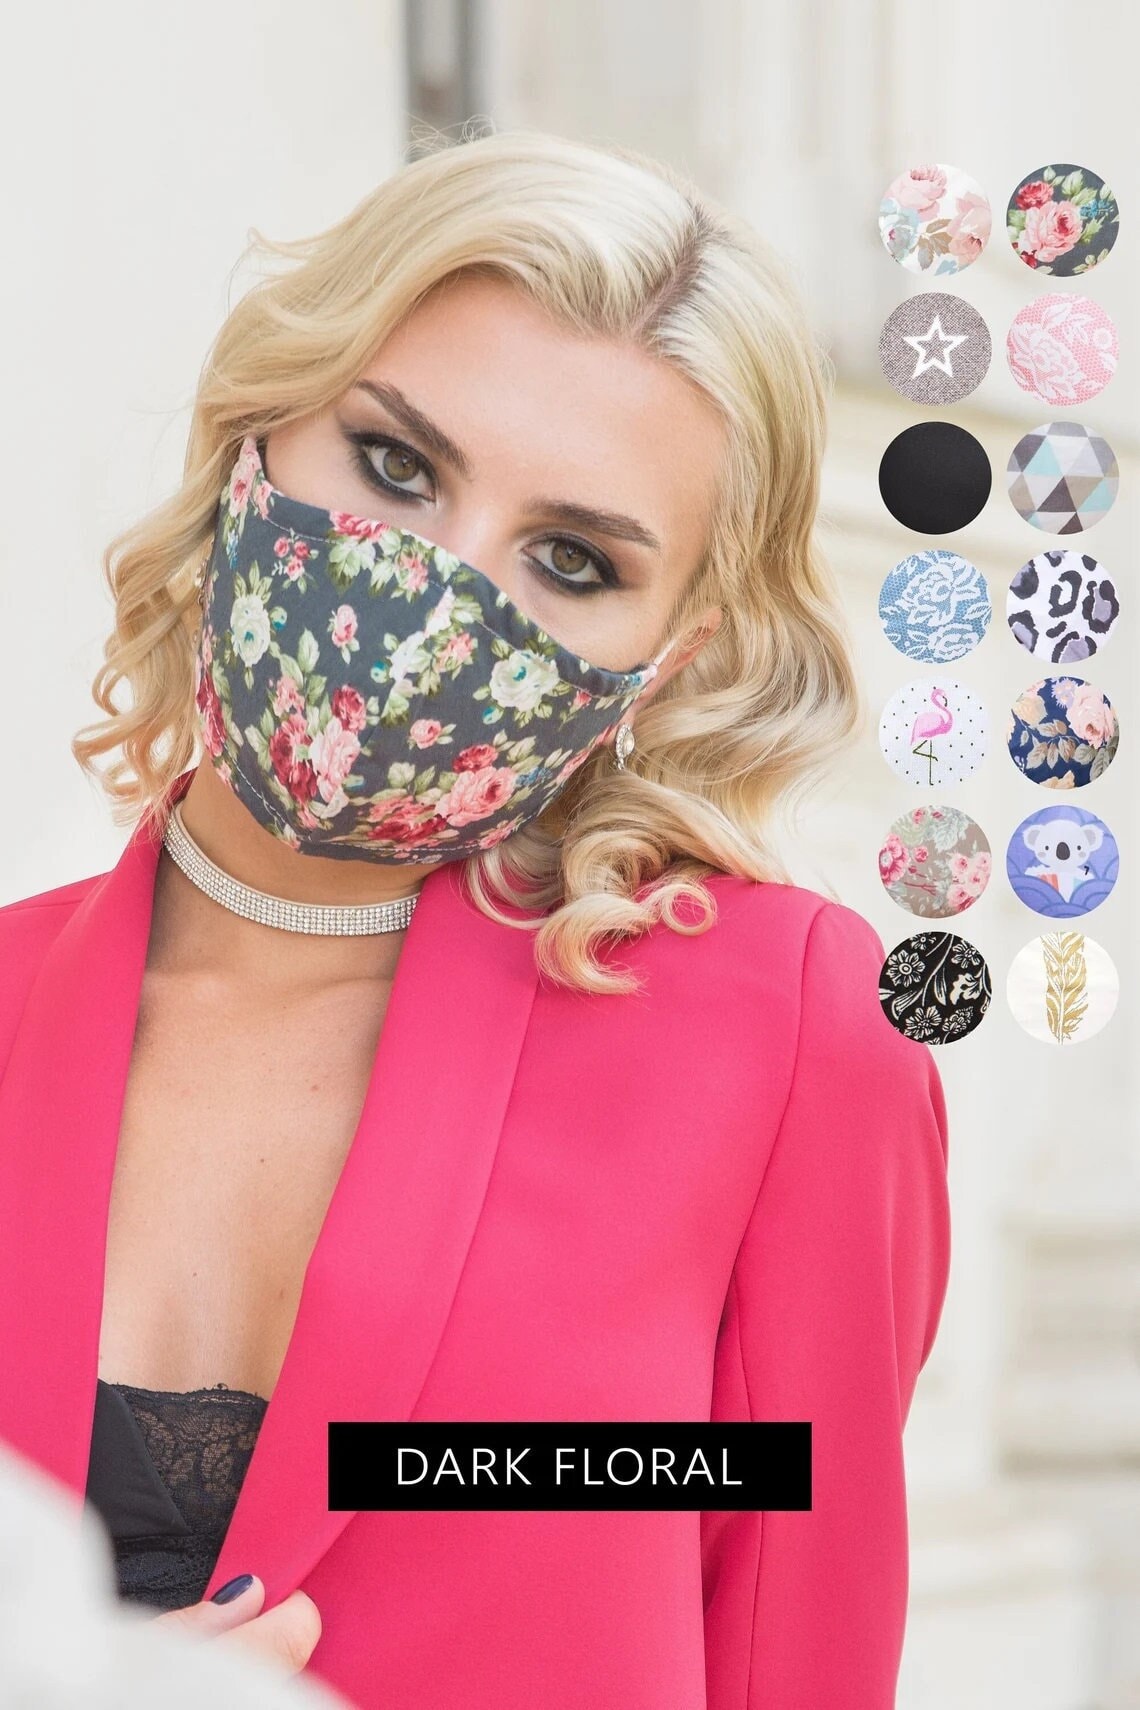 Schwarze Florale Gesichtsmaske Waschbare Maske Mit Filtertasche, Wiederverwendbare Frauen Atmungsaktive Gesichtsbedeckung Für Brillenträger, Damen von Etsy - SoftFeelingsArt